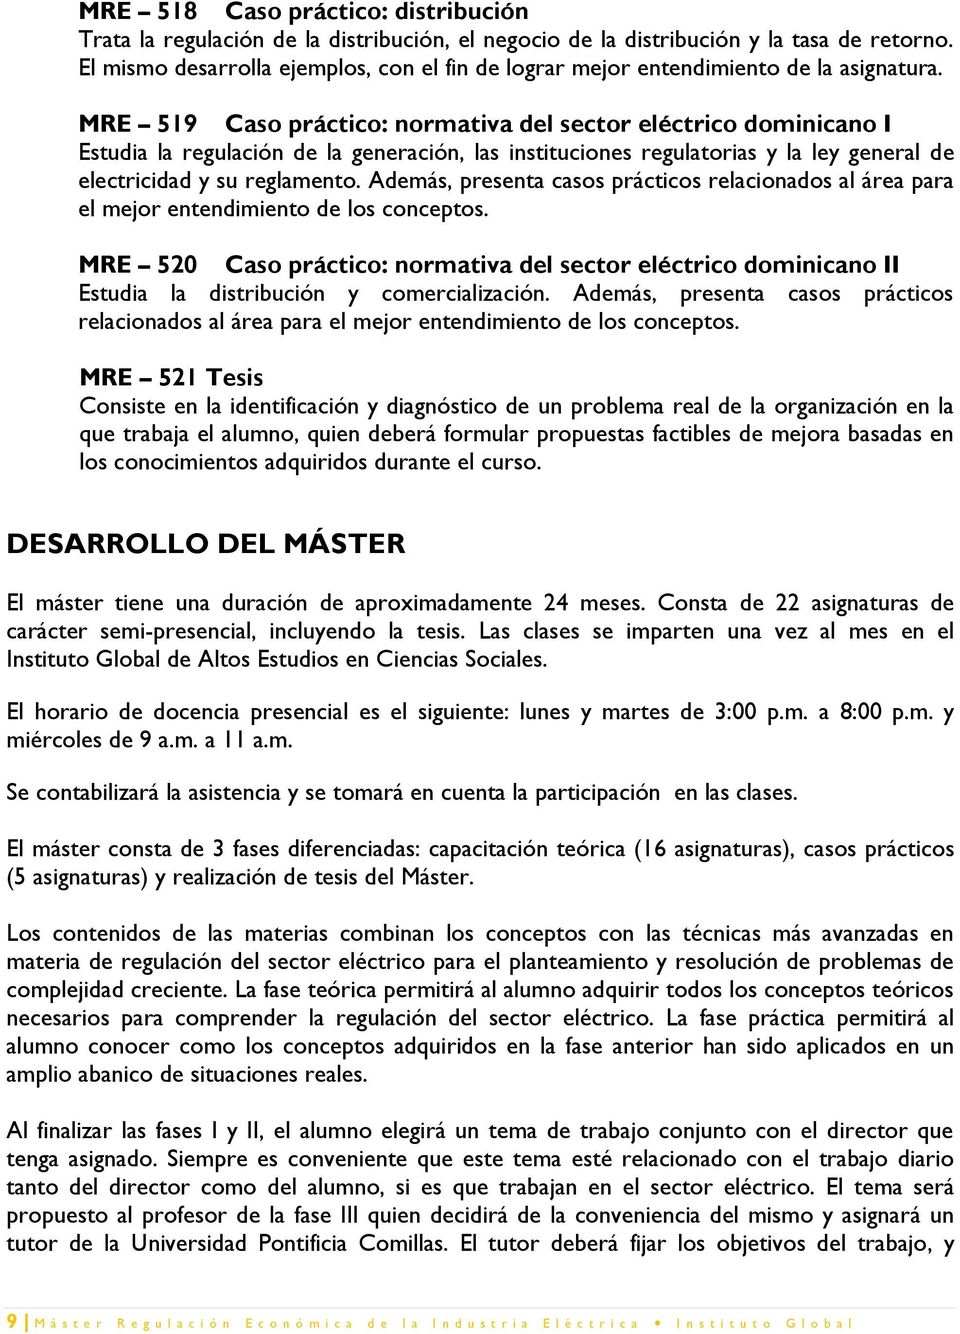 MRE 519 Caso práctico: normativa del sector eléctrico dominicano I Estudia la regulación de la generación, las instituciones regulatorias y la ley general de electricidad y su reglamento.